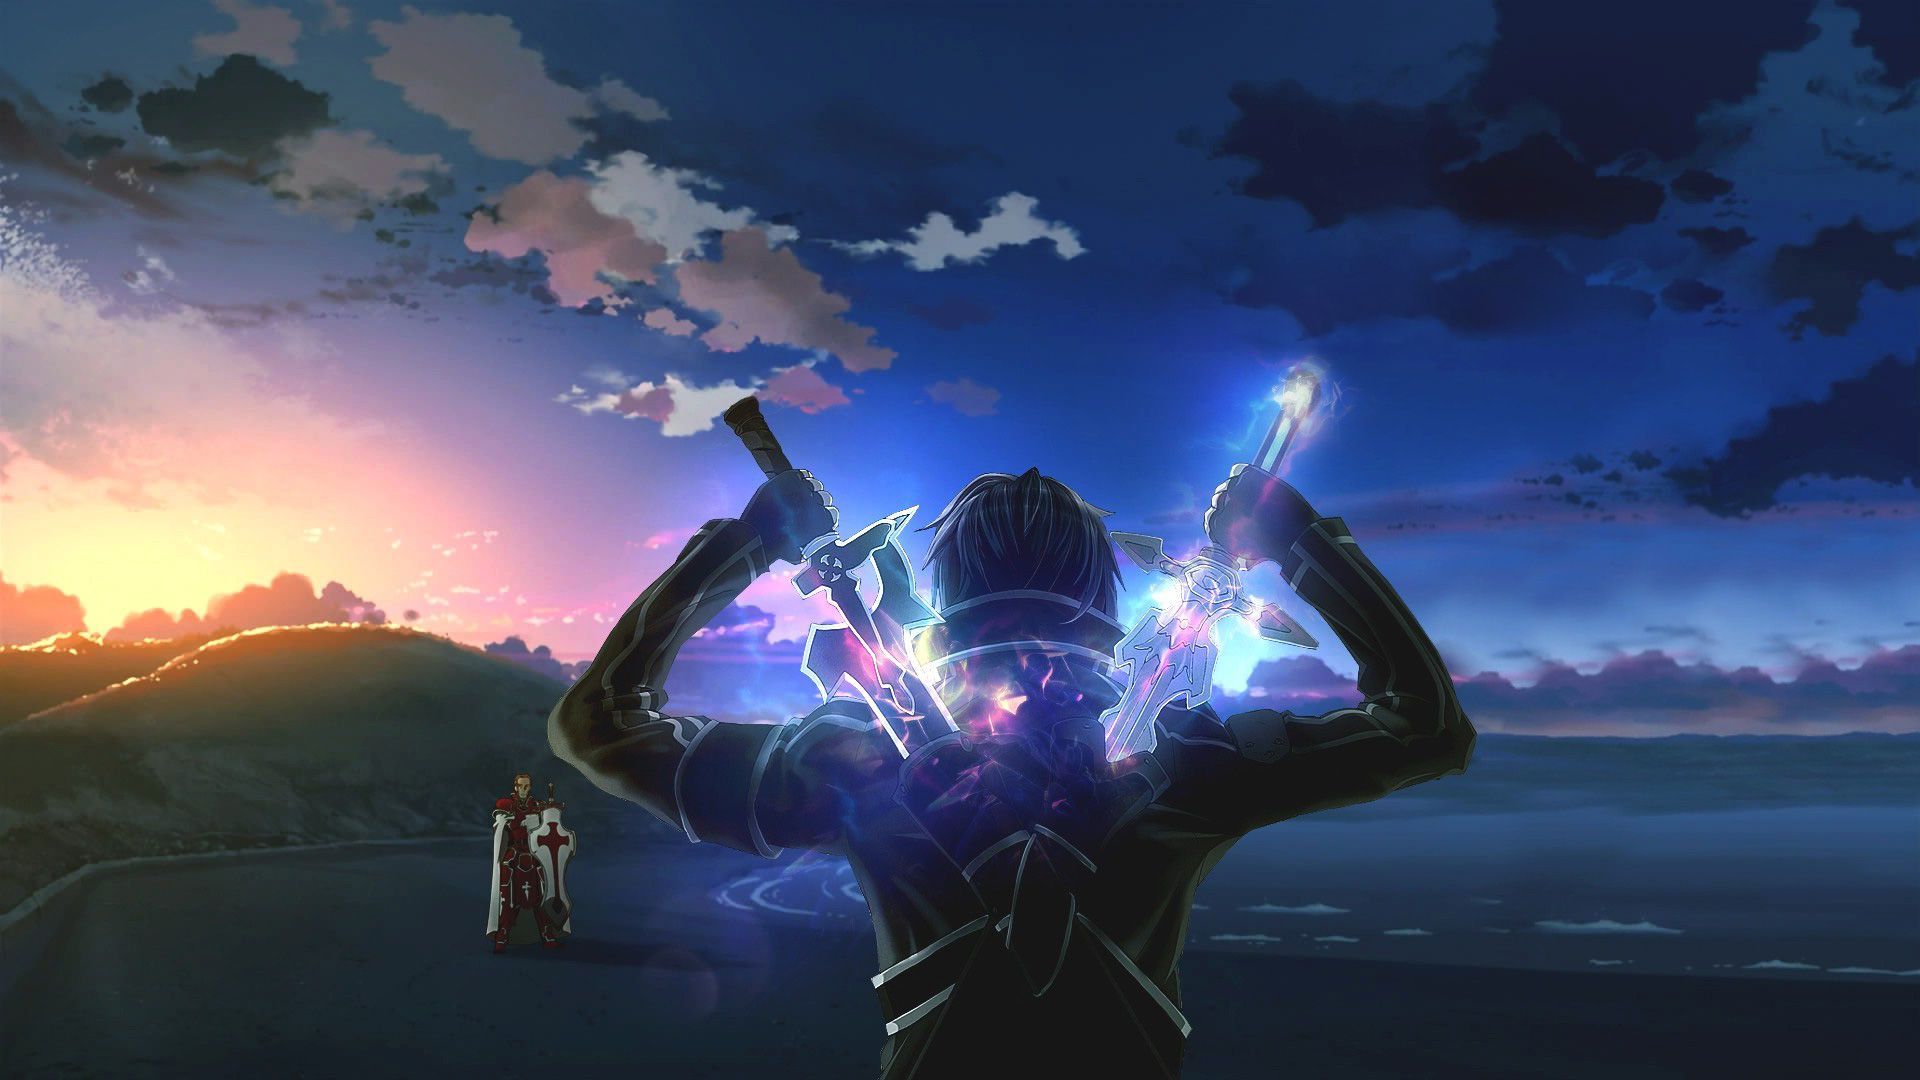 Sword Art Online Anime HD Wallpaper Jpg Imagery